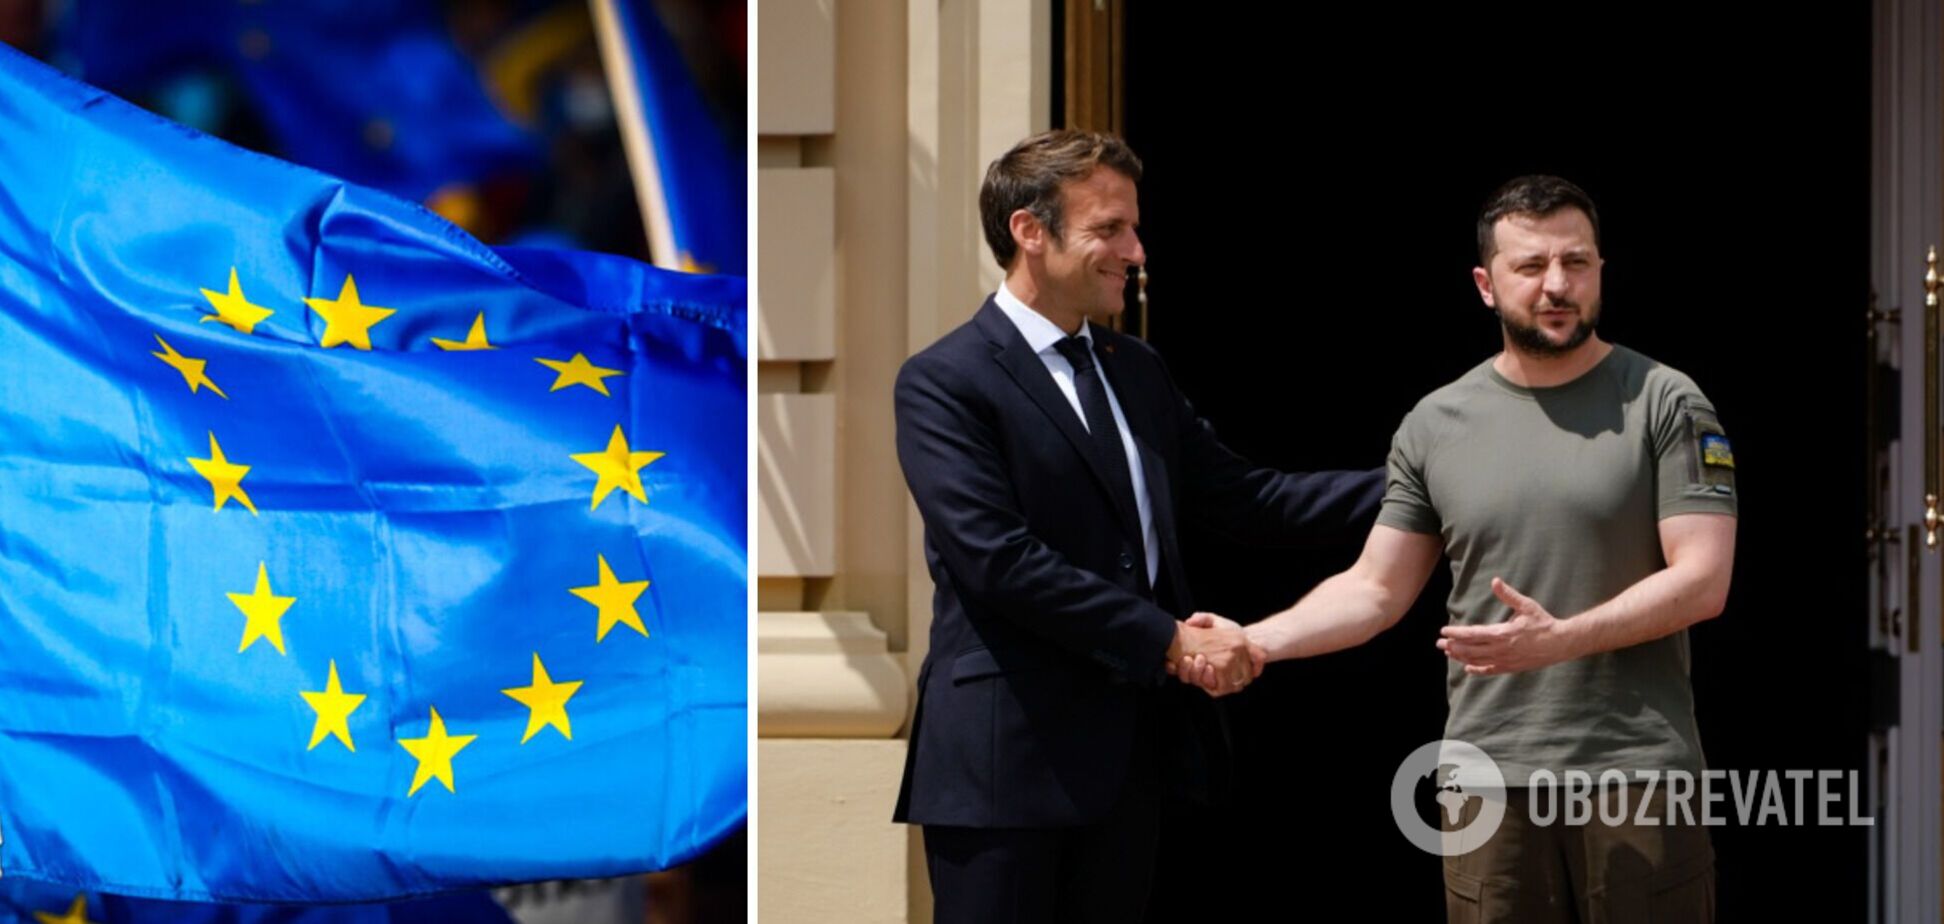 Макрон уверяет, что Украина должна стать членом ЕС по упрощенной процедуре